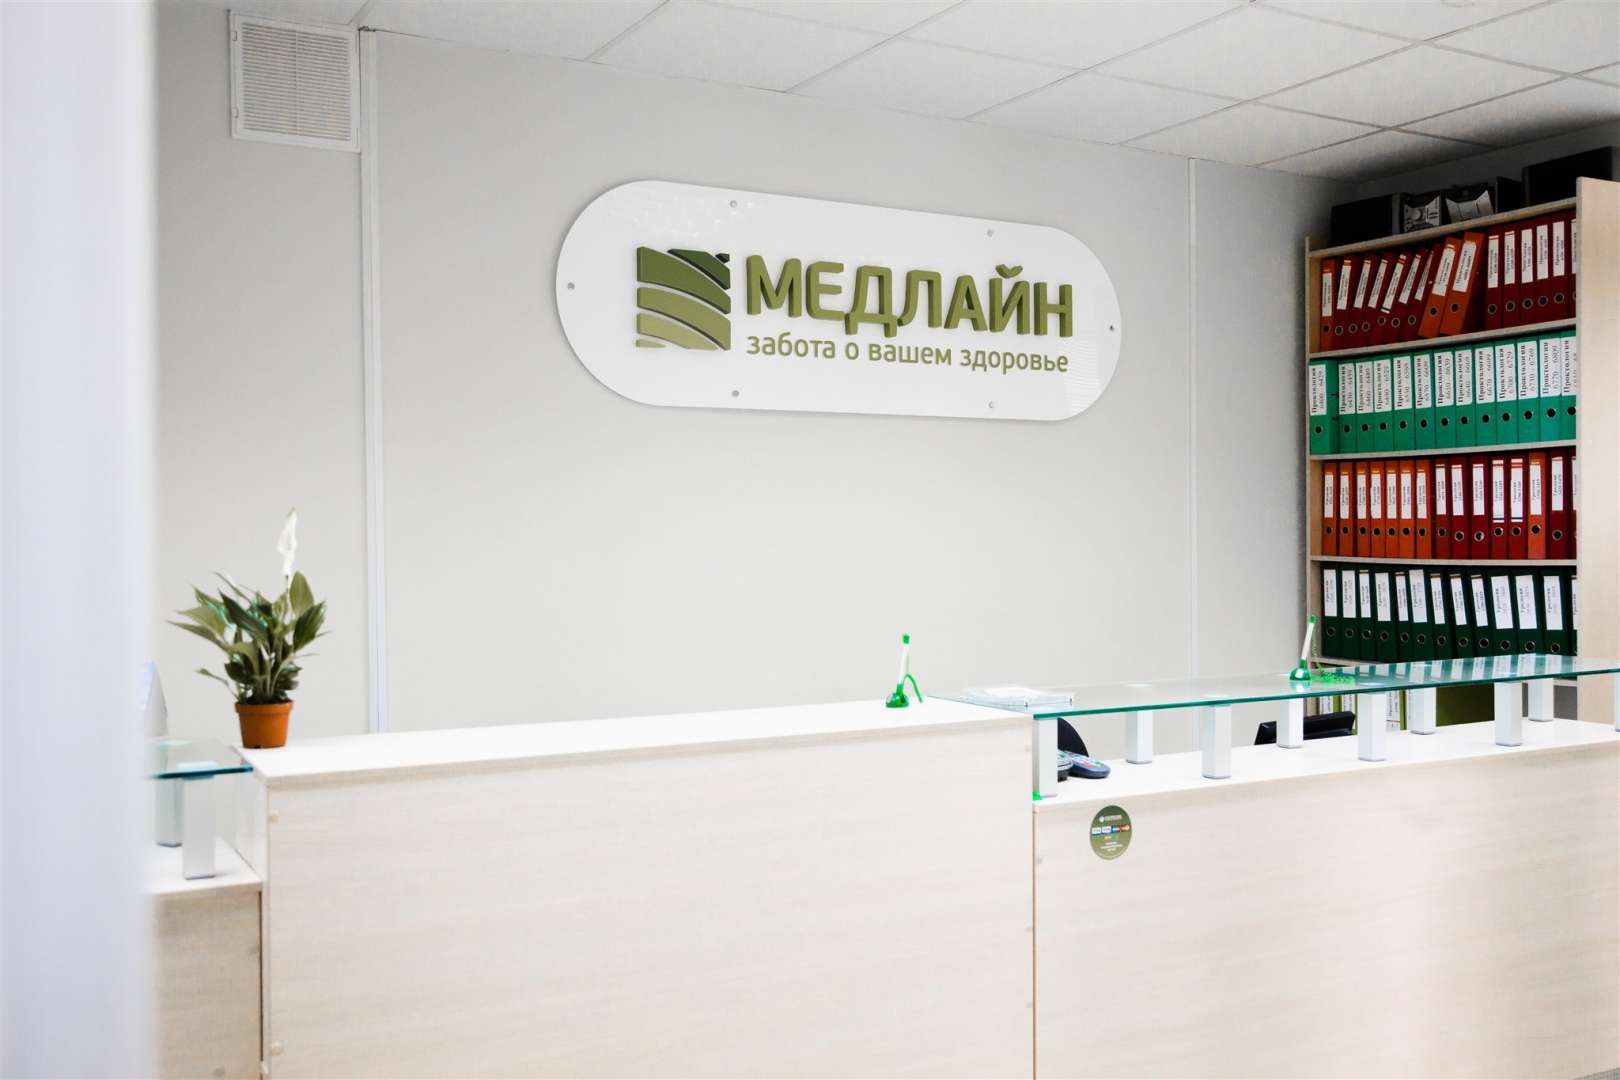 МЕДЛАЙН — современный центр проктологии и урологии в Алтайском крае